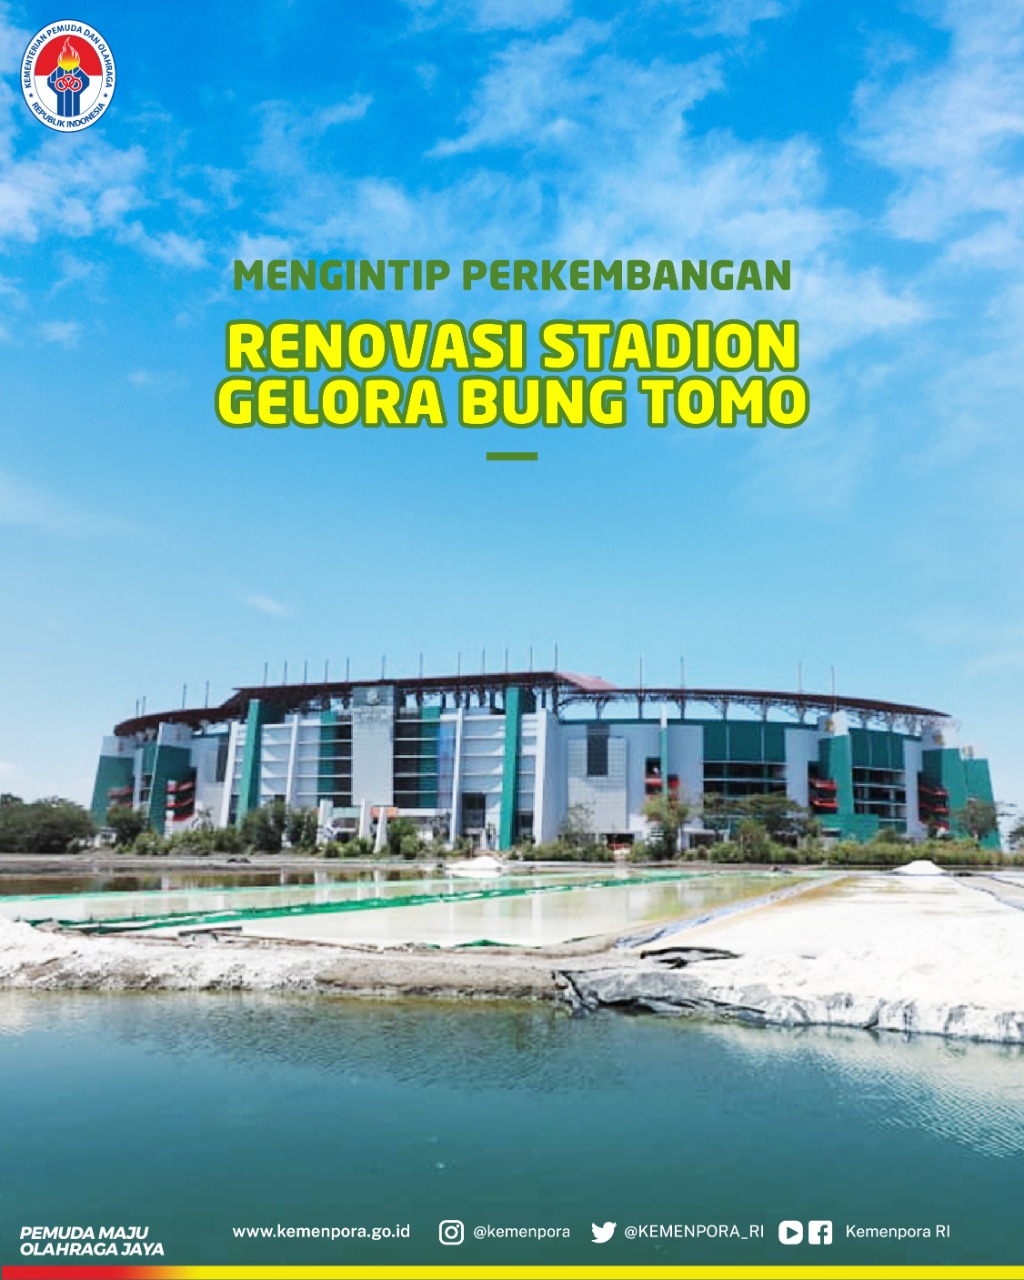 Surabaya sebagai salah satu kota penyelenggara benahi Stadion Gelora Bung Tomo.